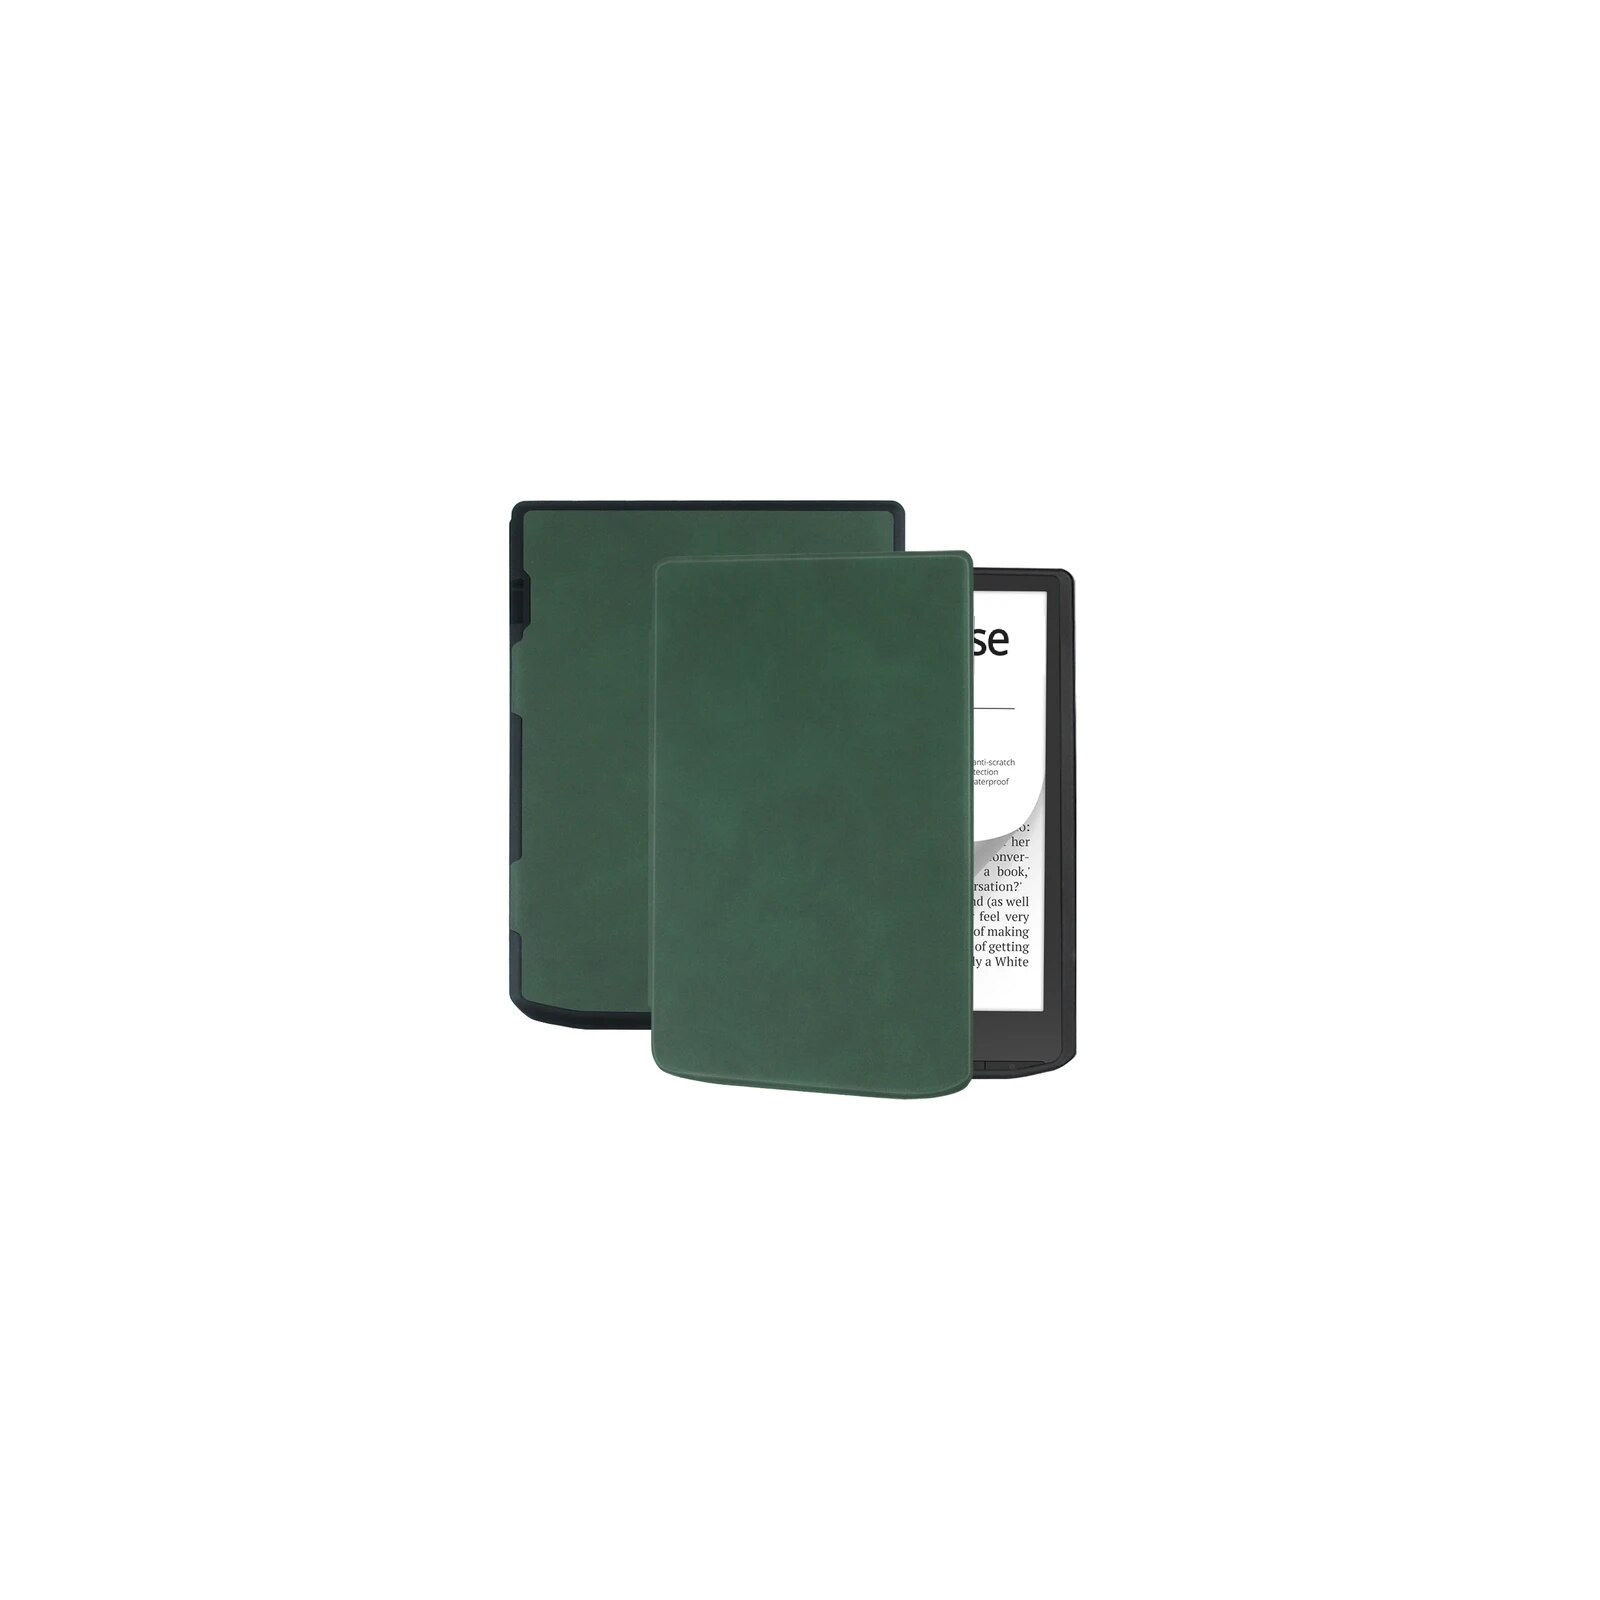 Чехол для электронной книги BeCover Smart Case PocketBook 629 Verse / 634 Verse Pro 6" Deep Blue (710452) изображение 2